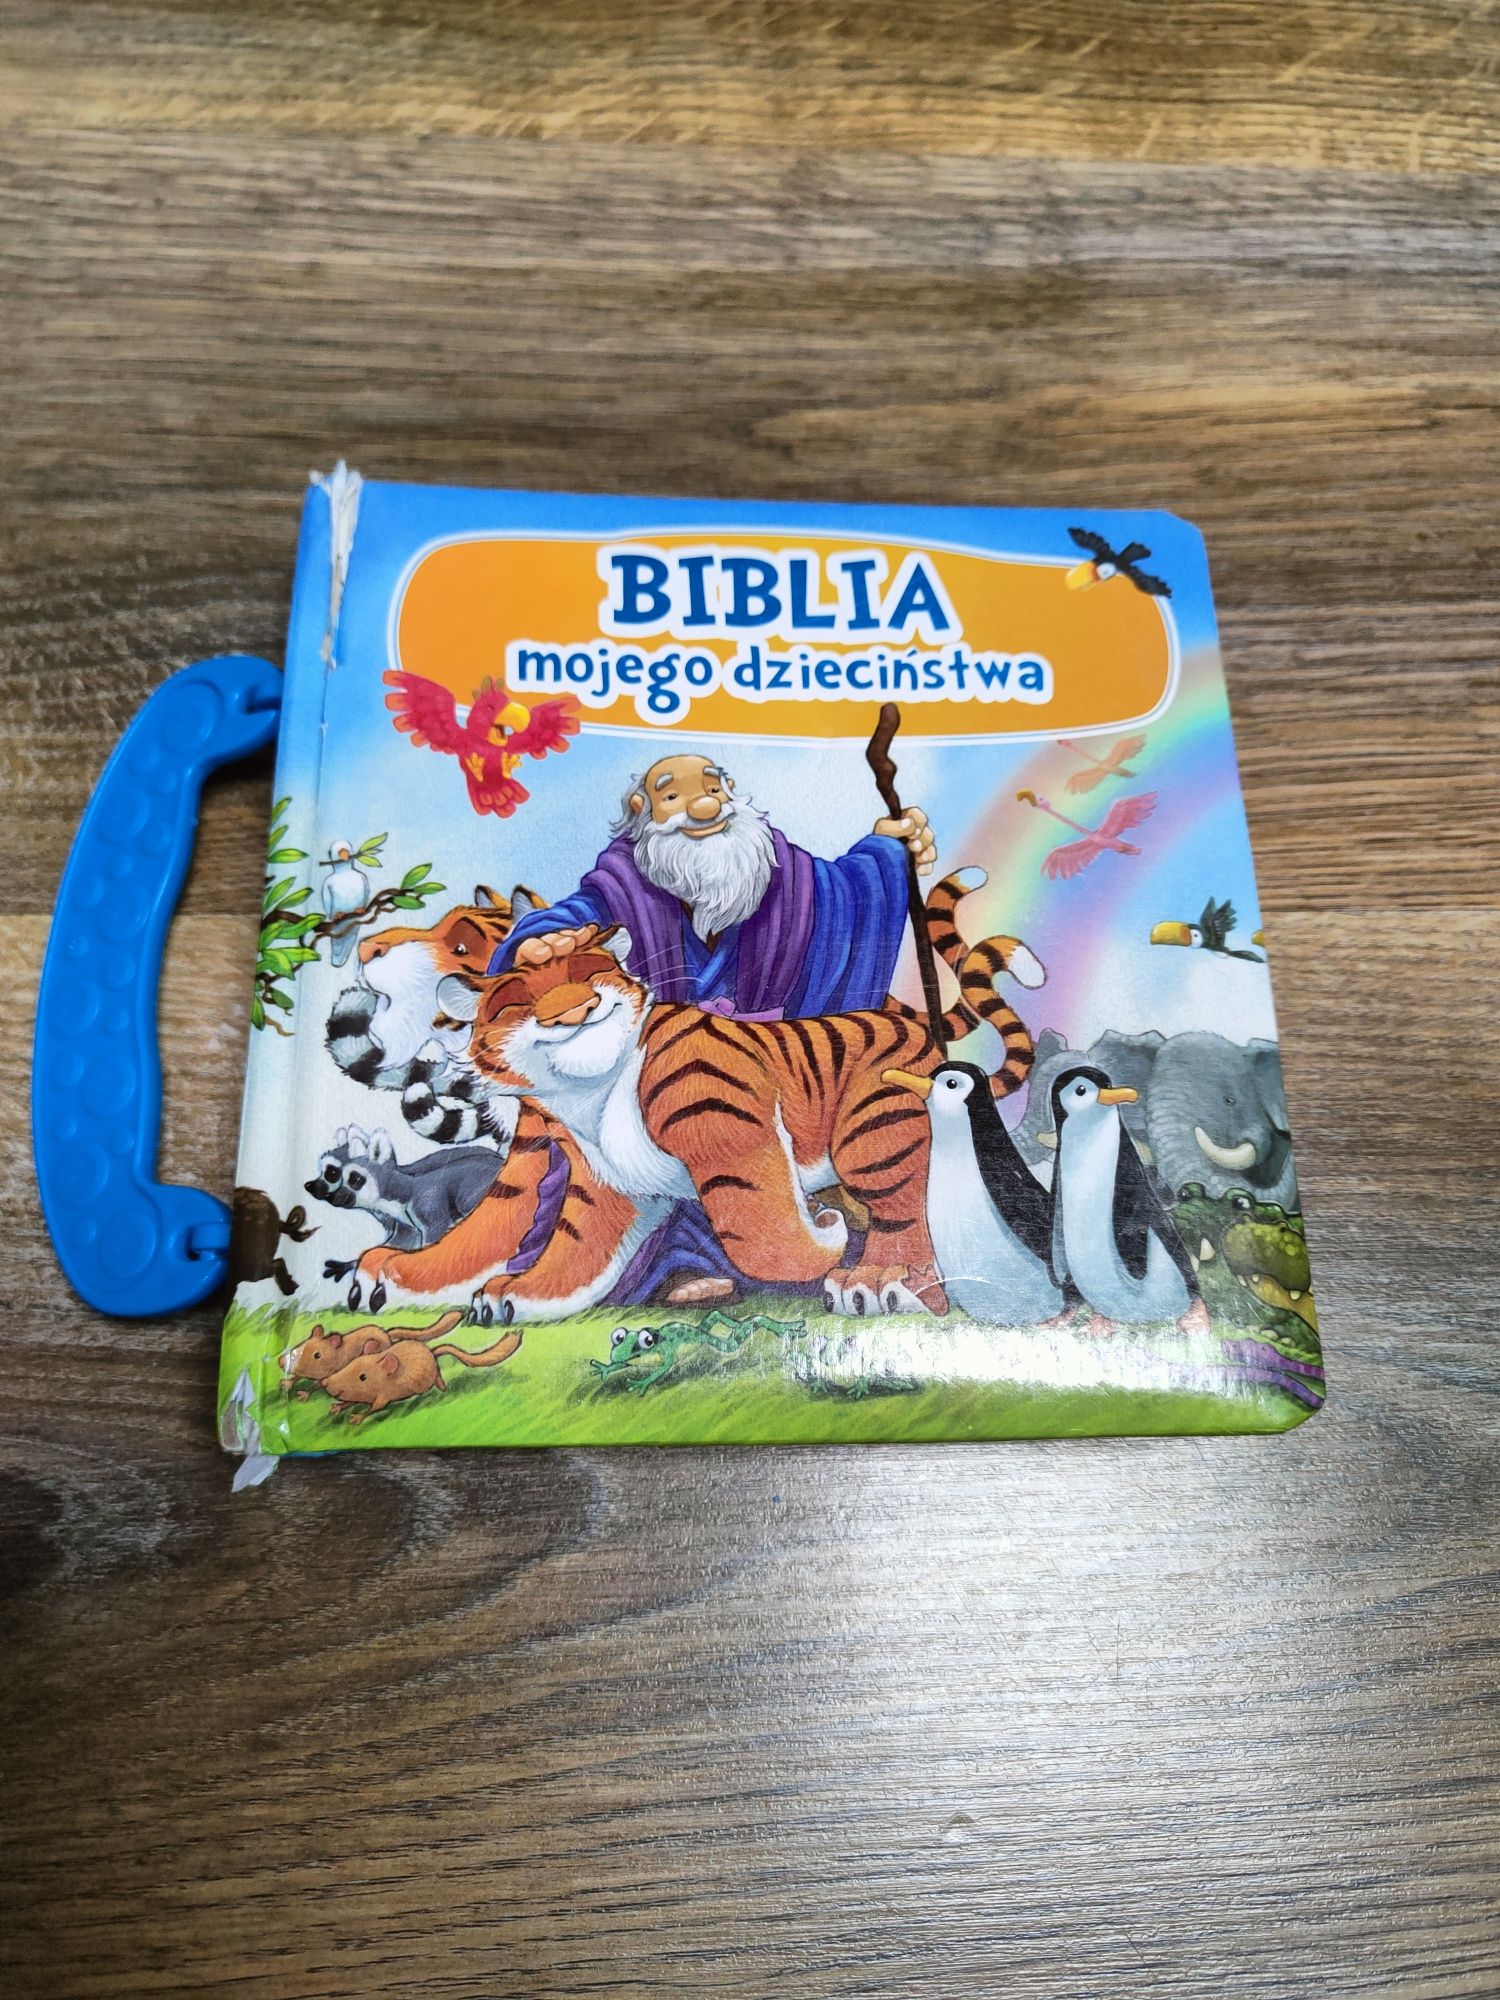 Biblia mojego dzieciństwa książka dla dzieci